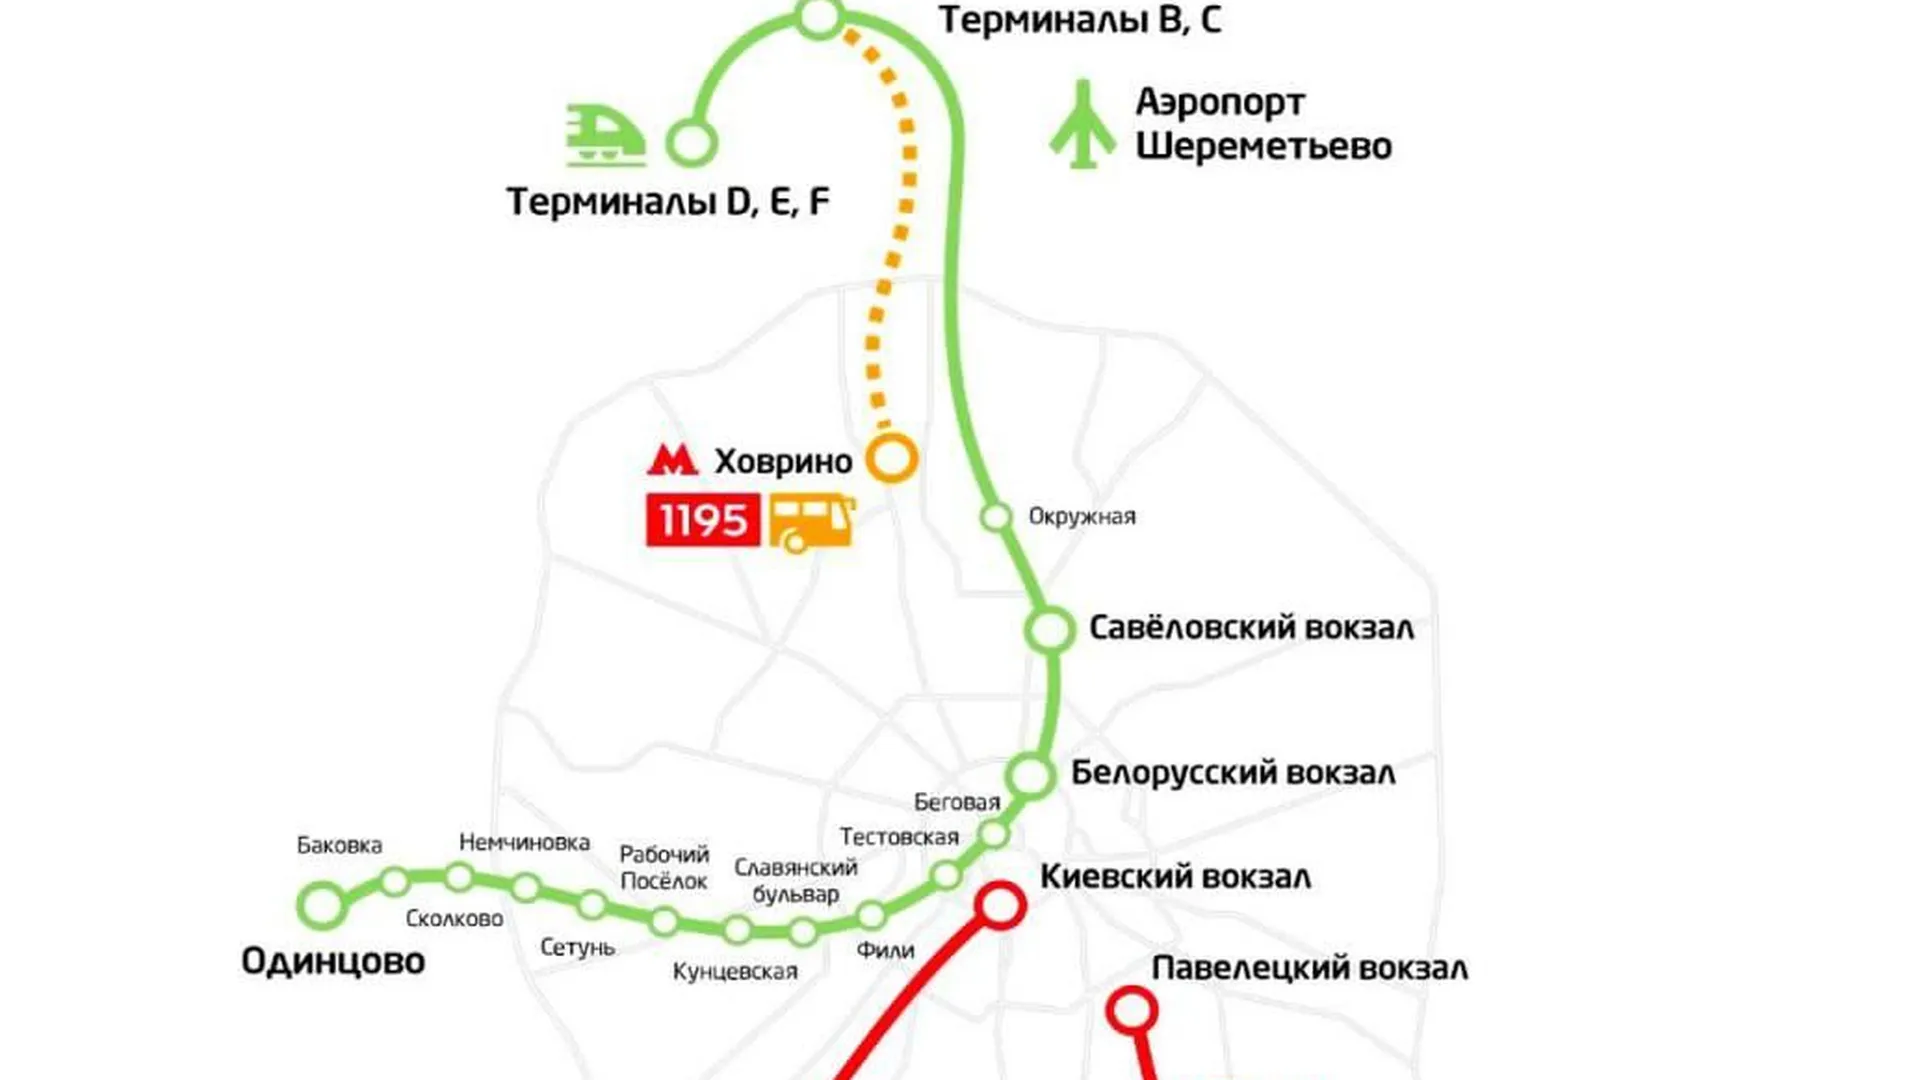 Аэроэкспресс белорусский вокзал шереметьево терминал с. Схема движения аэроэкспресса. Схема движения аэроэкспресса от Шереметьево. Остановки аэроэкспресса до Шереметьево. Маршрут аэроэкспресса на карте.